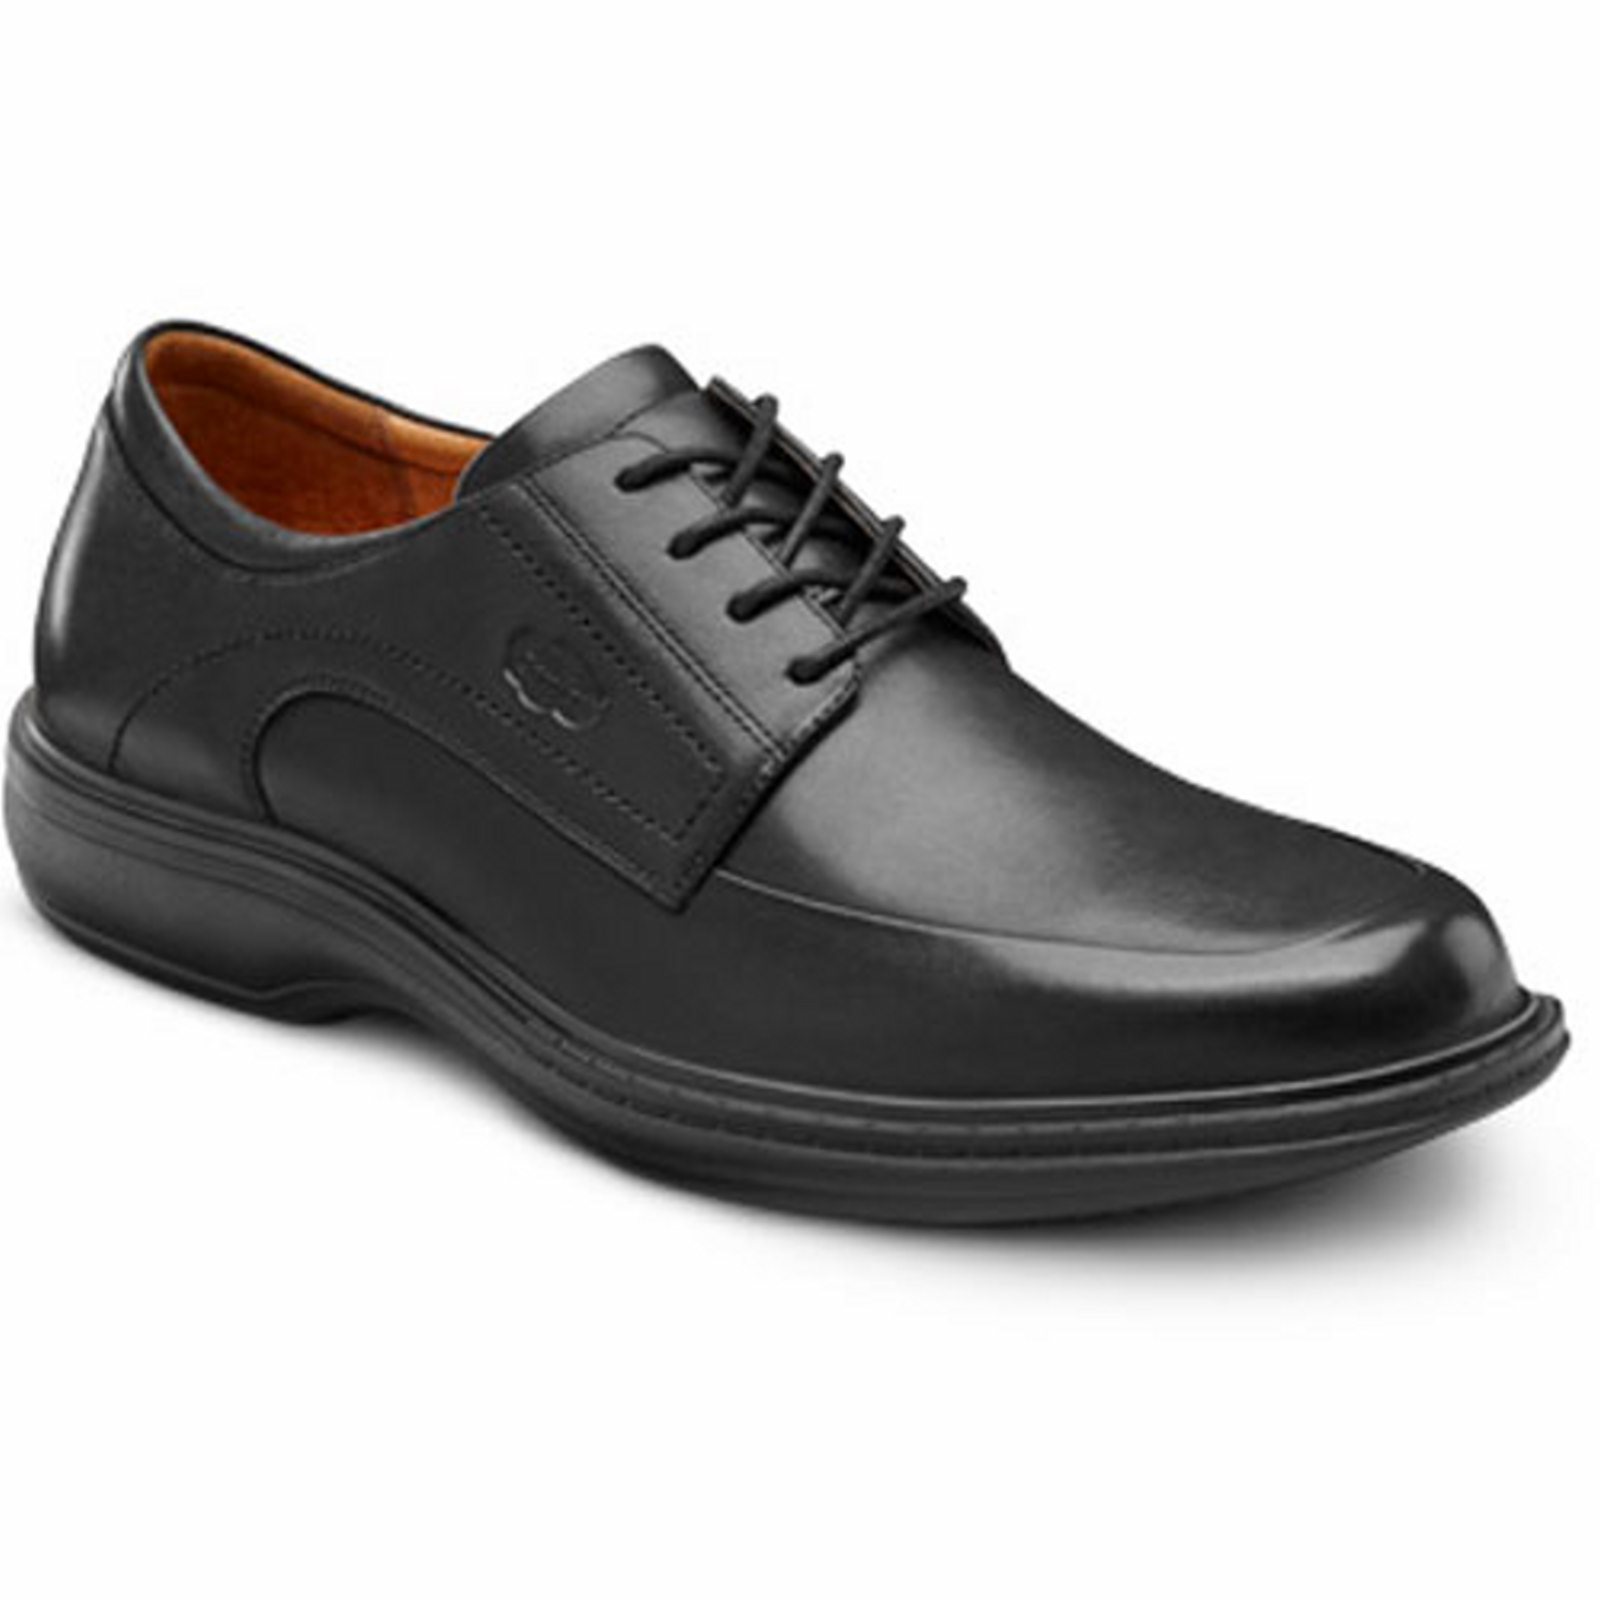 Dr. Comfort Classic Men's Dress Shoe: 9.5 Wide (E/2E) Black Lace - image 1 of 5